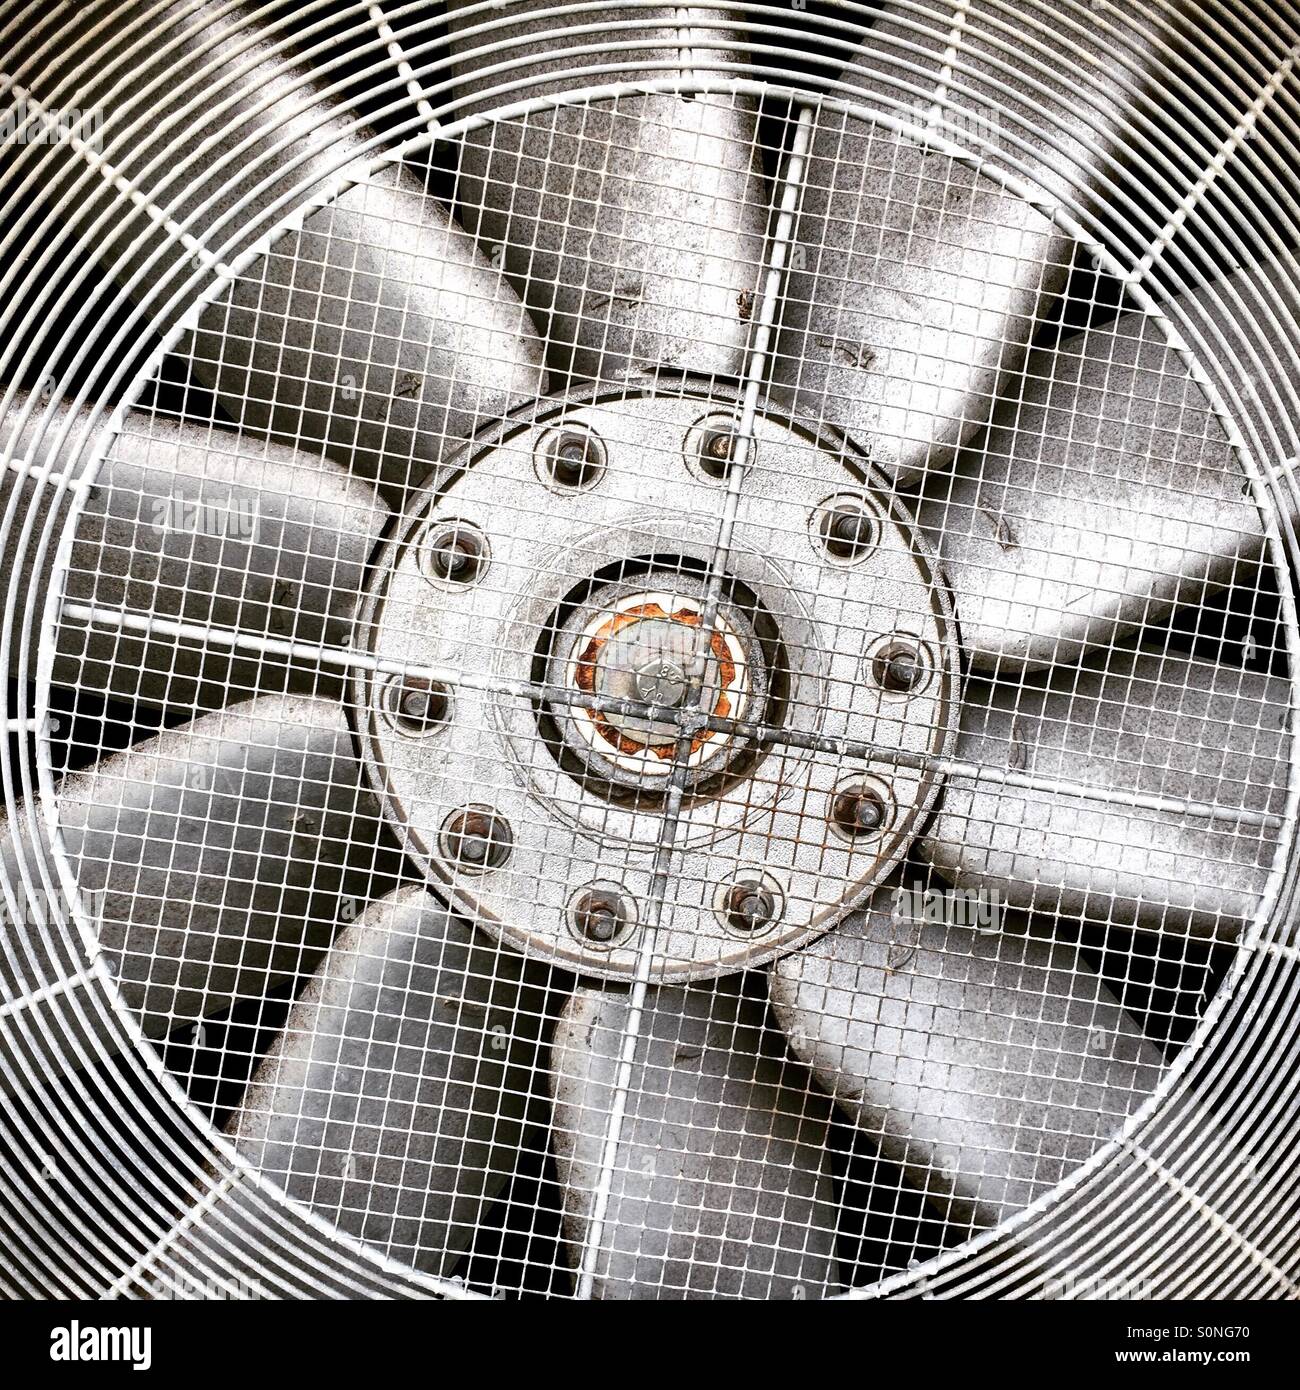 Ventilateur Industriel Imágenes y Fotos - 123RF